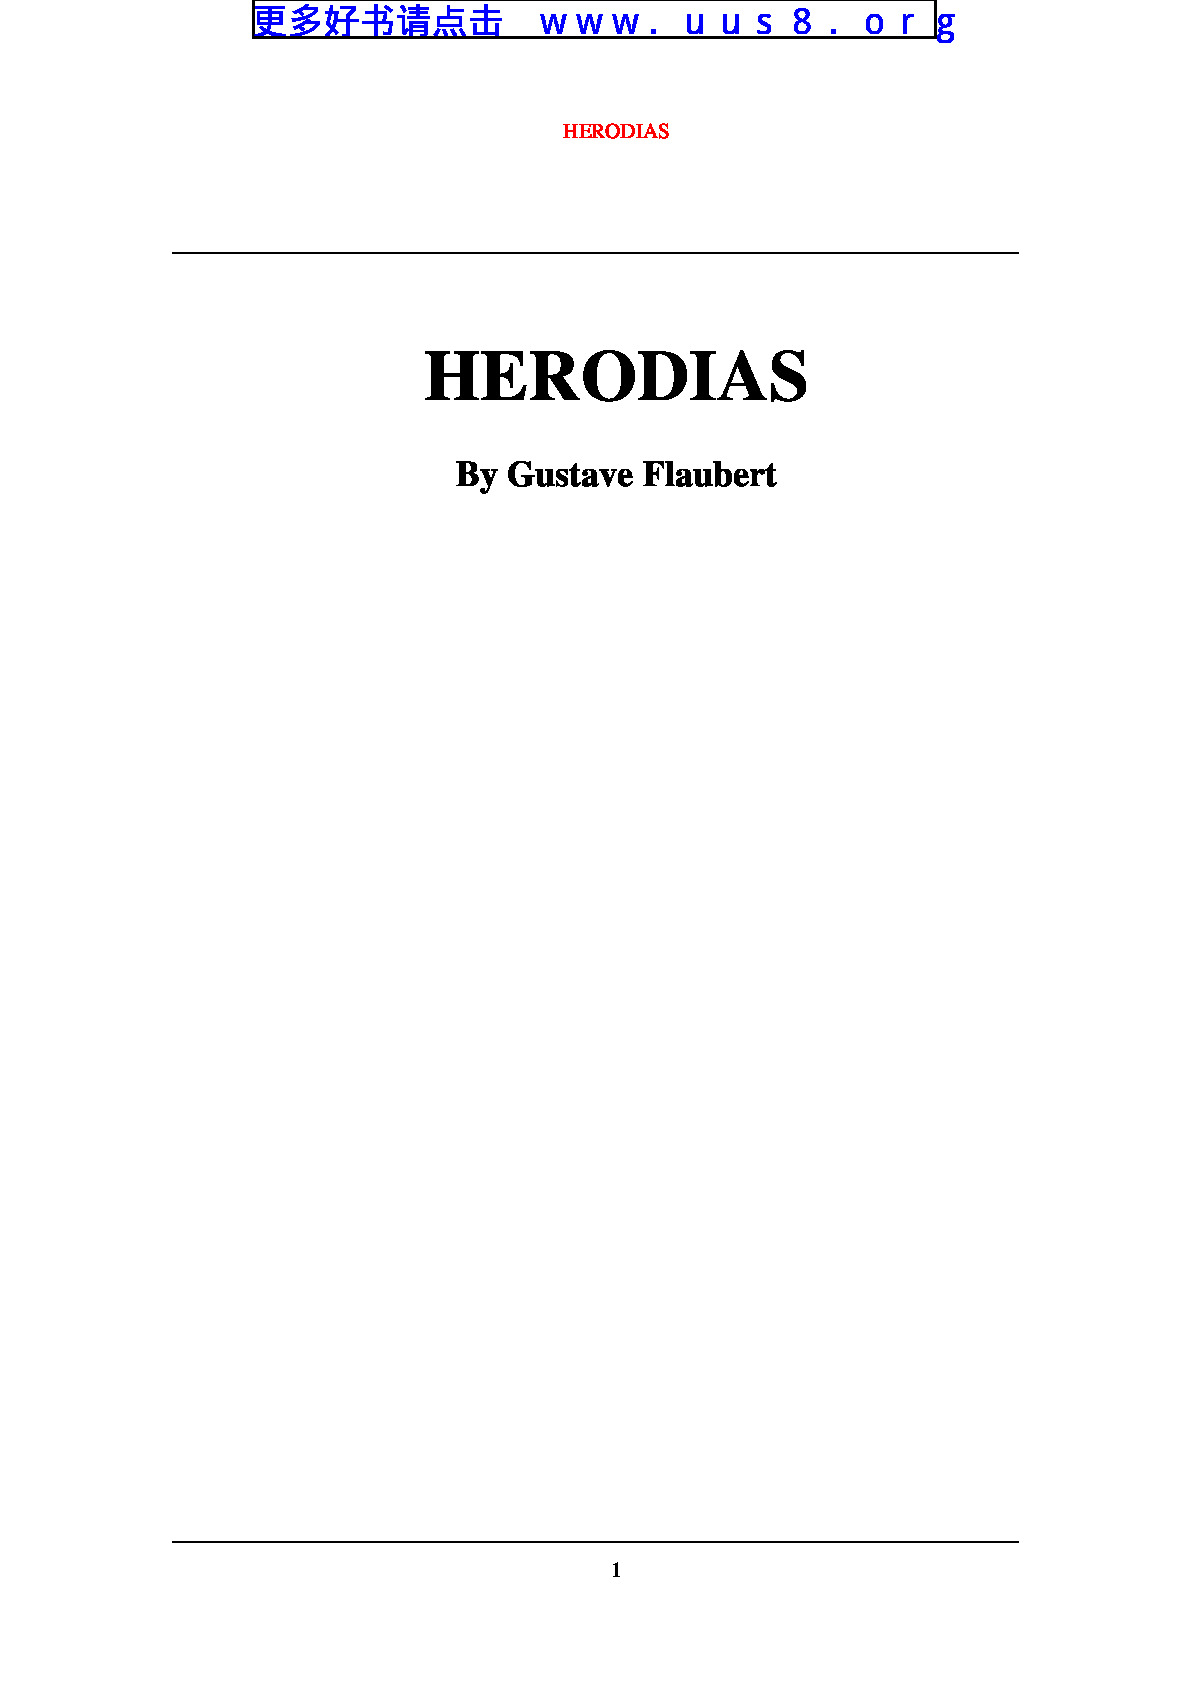 HERODIAS(赫罗迪亚斯)